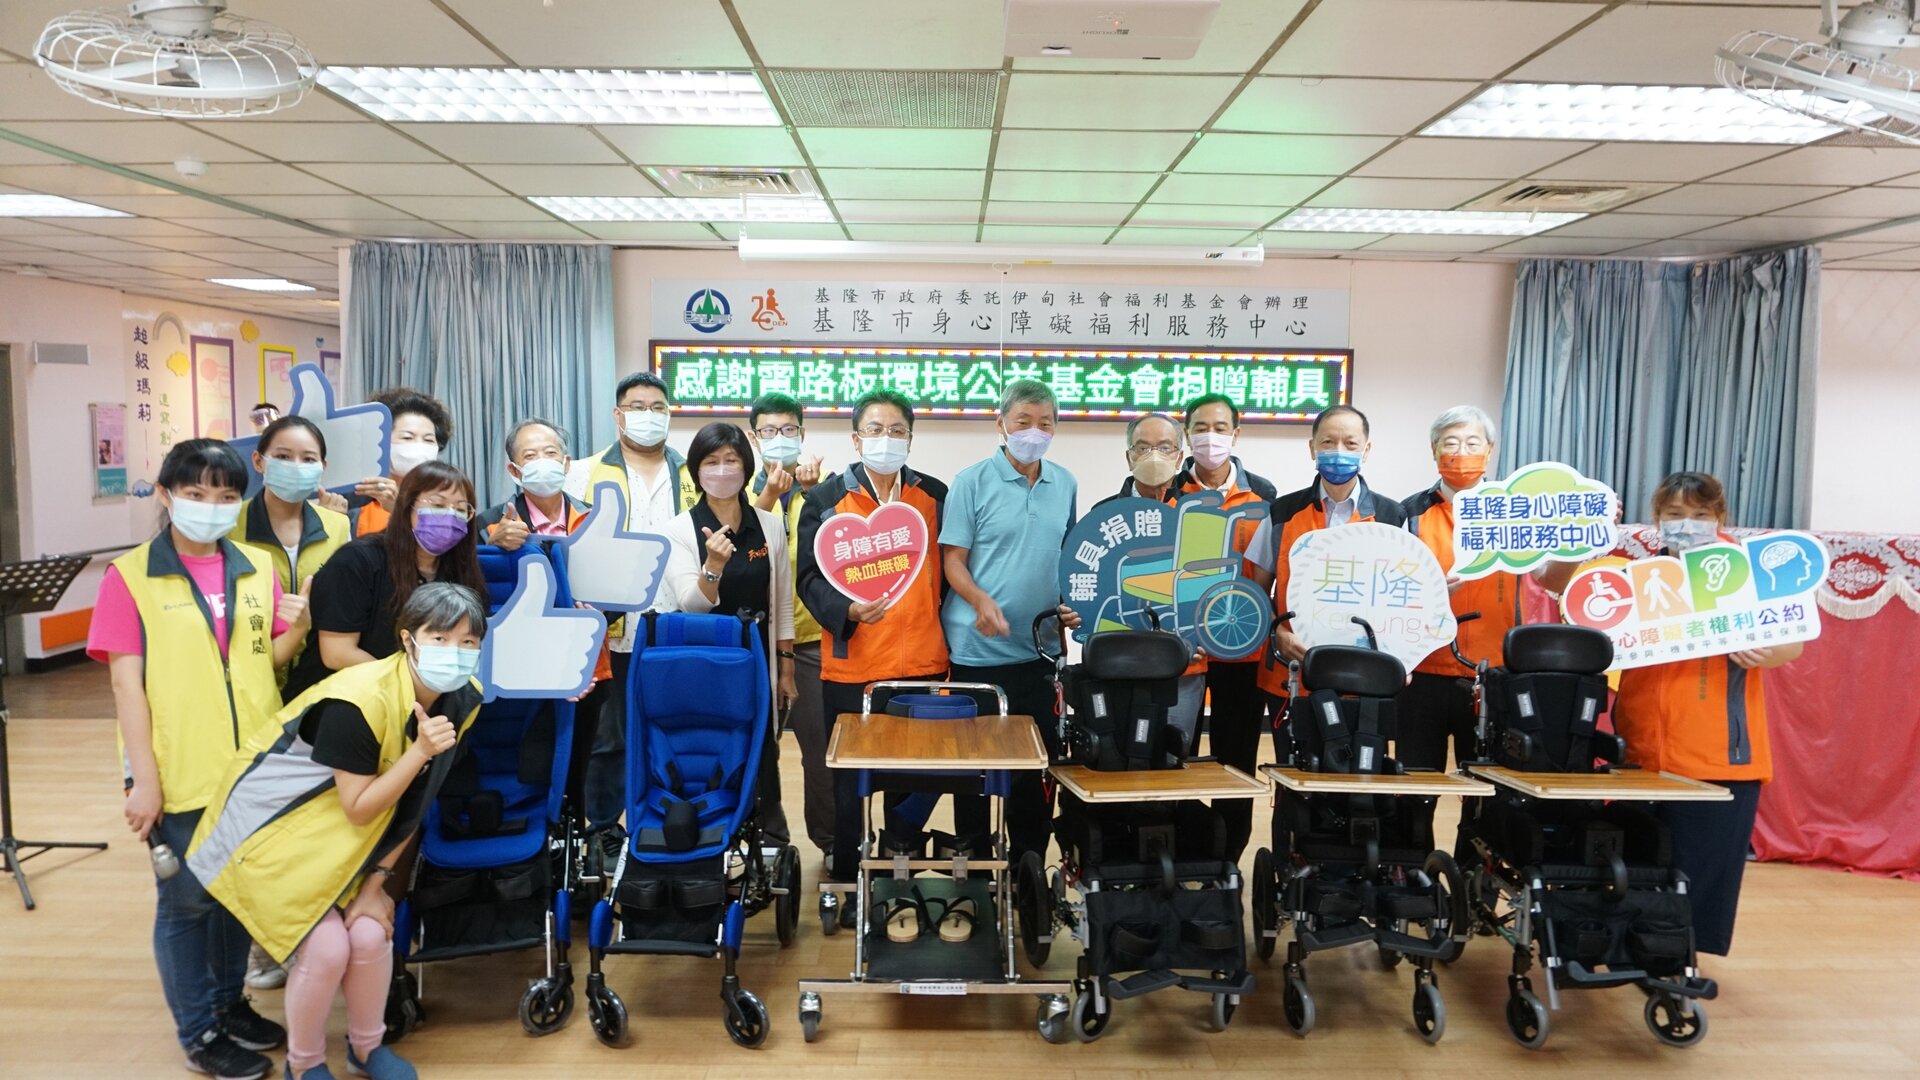 參與贊助基隆身障中心教輔具活動人員與捐助的教輔具共同合影留念。